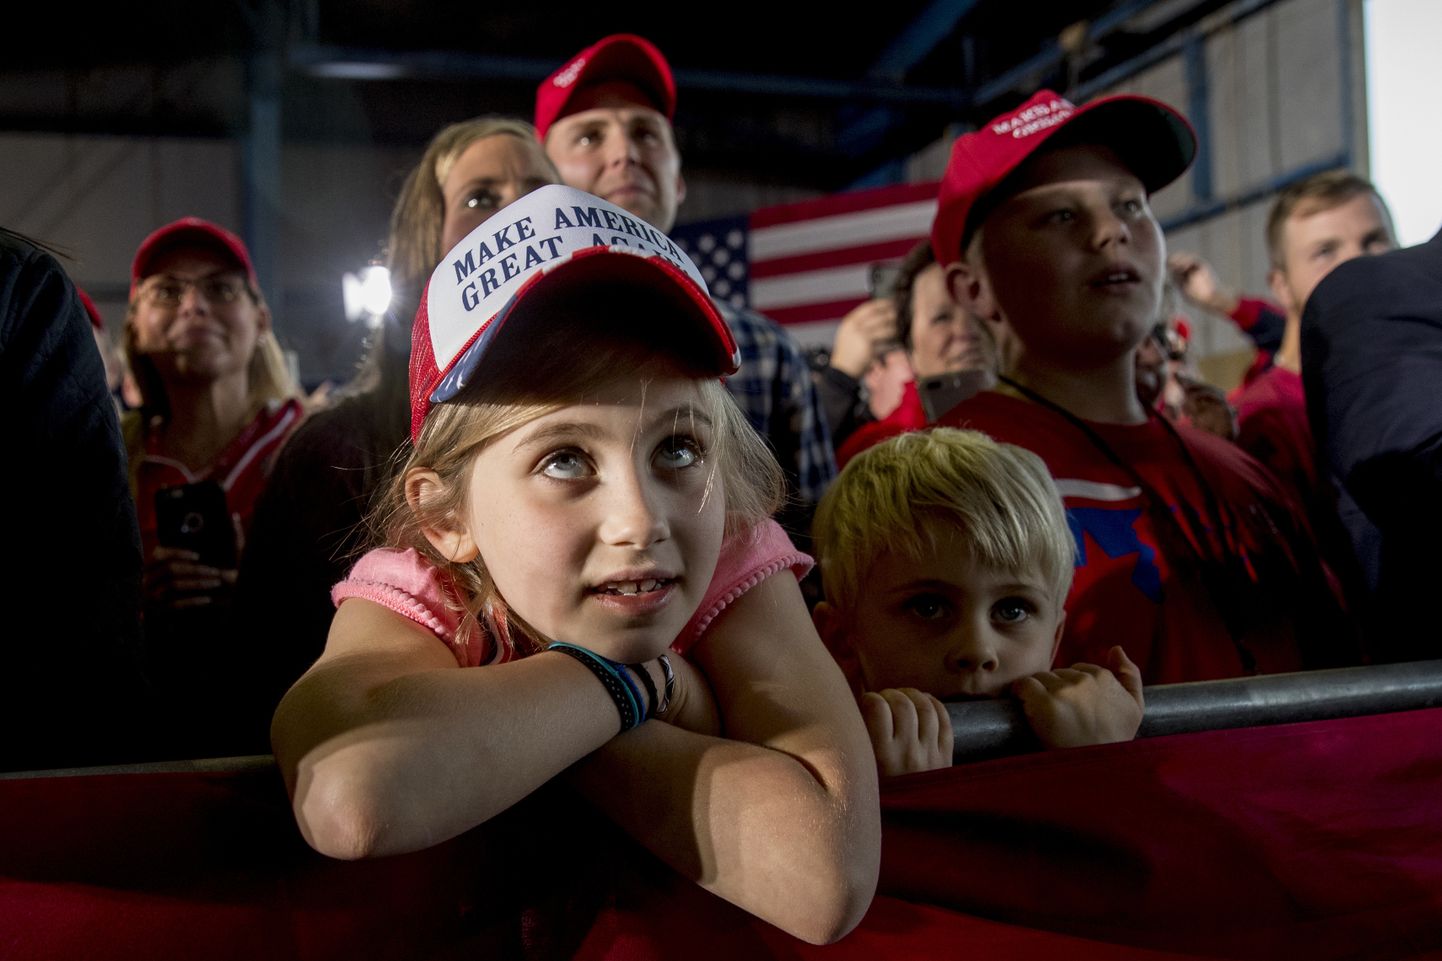 Trumpi kampaaniaüritusel osalev laps.